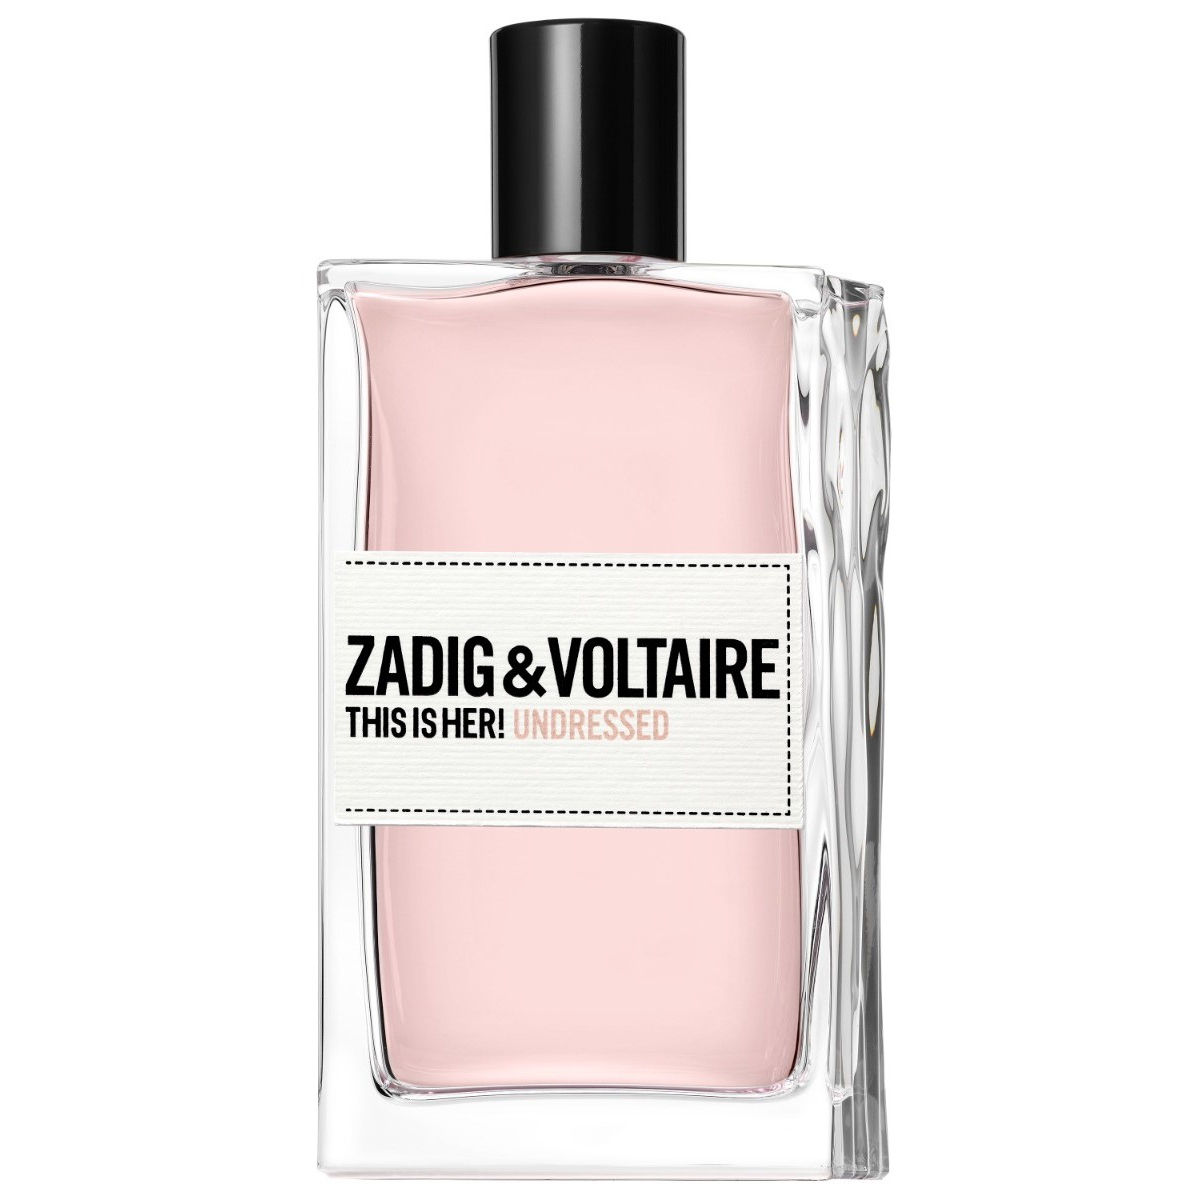 Zadig & Voltaire This is Her! Undressed Eau de parfum spray 100 ml